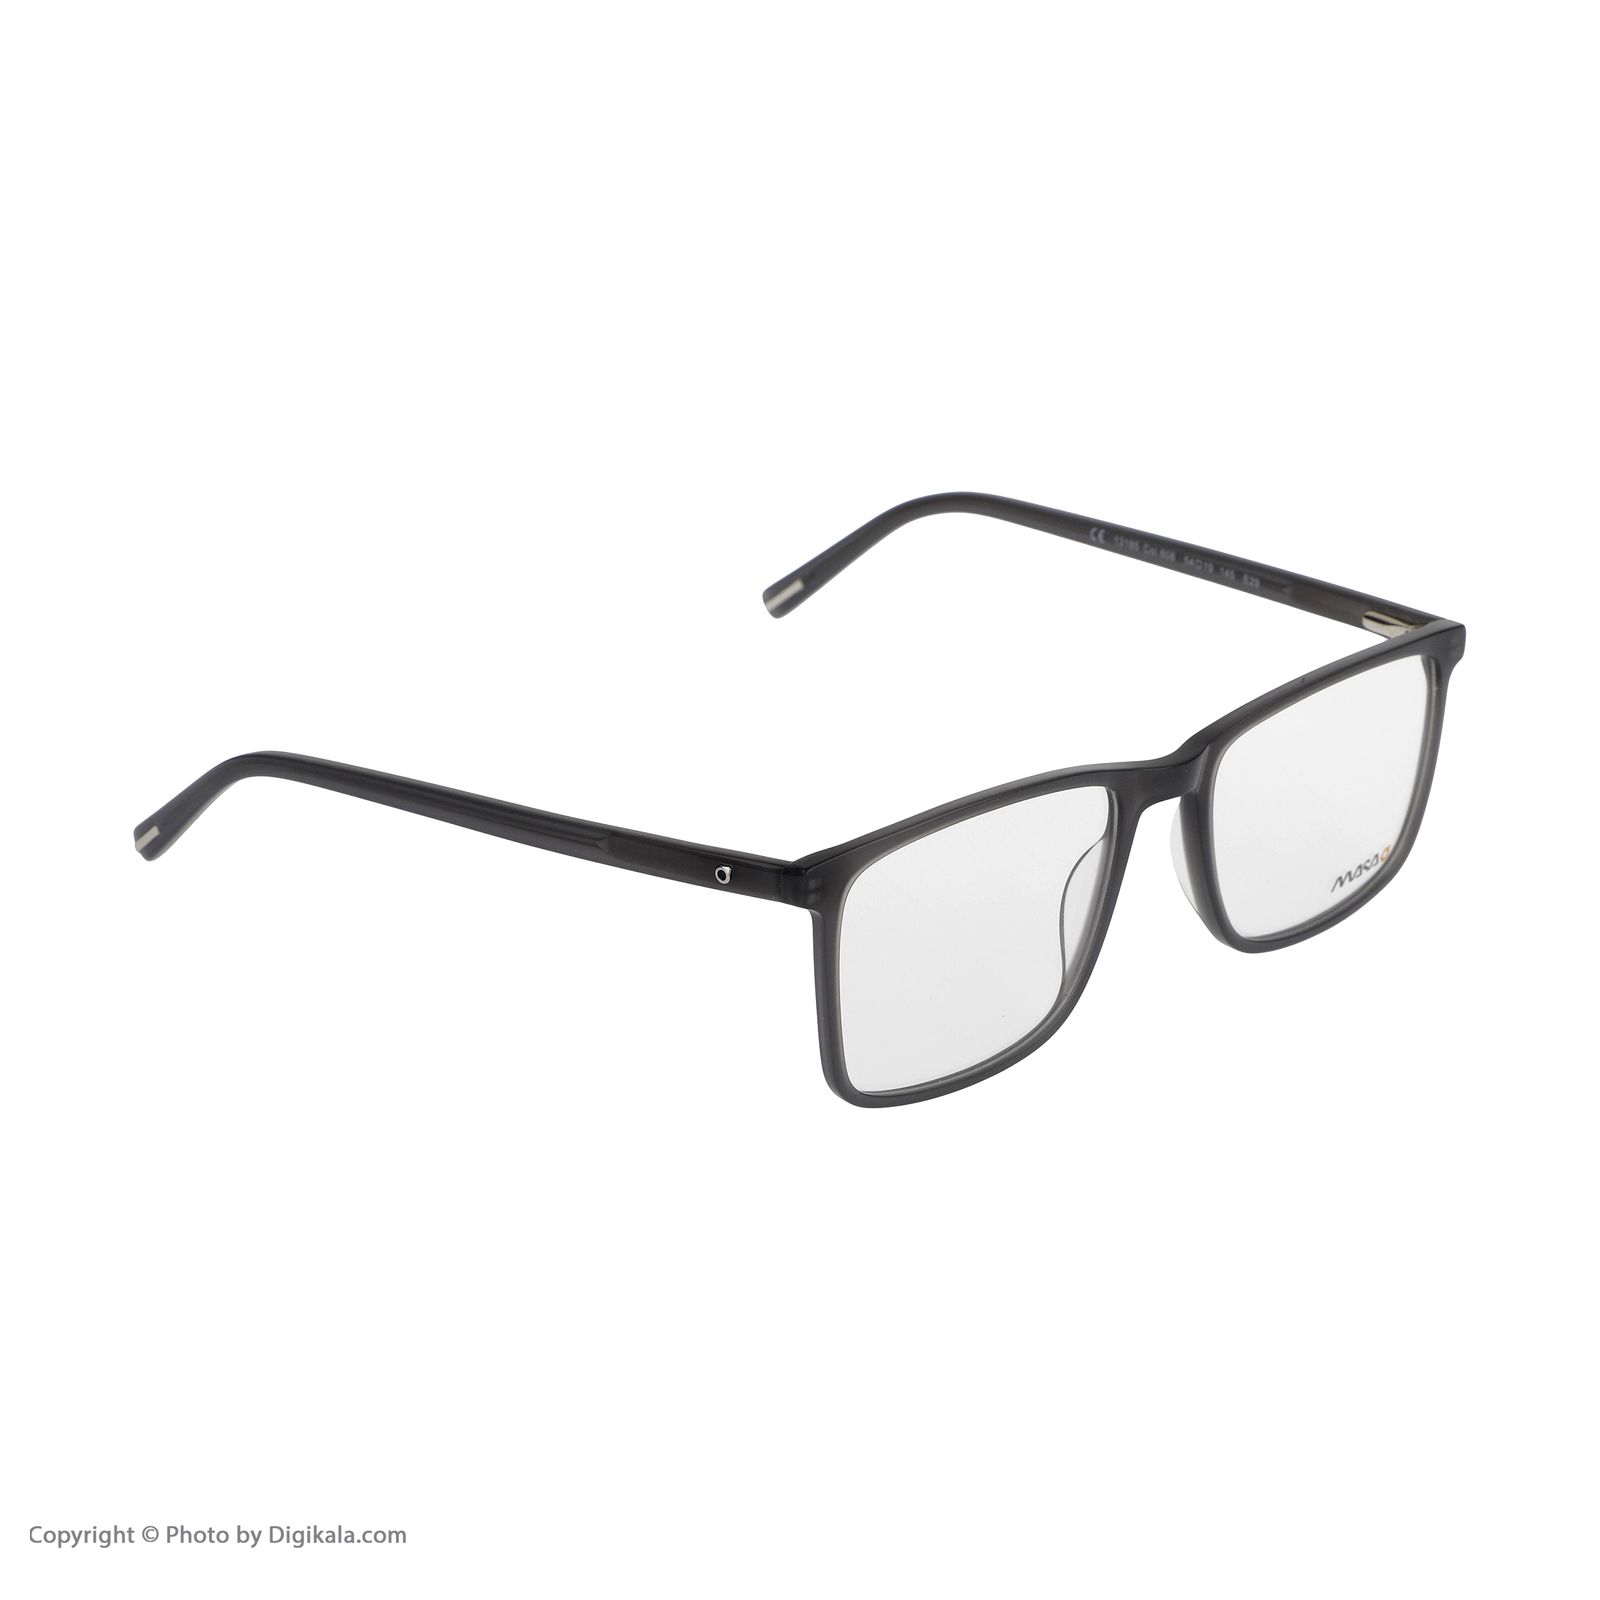 فریم عینک طبی ماسائو مدل 13185-608 -  - 3